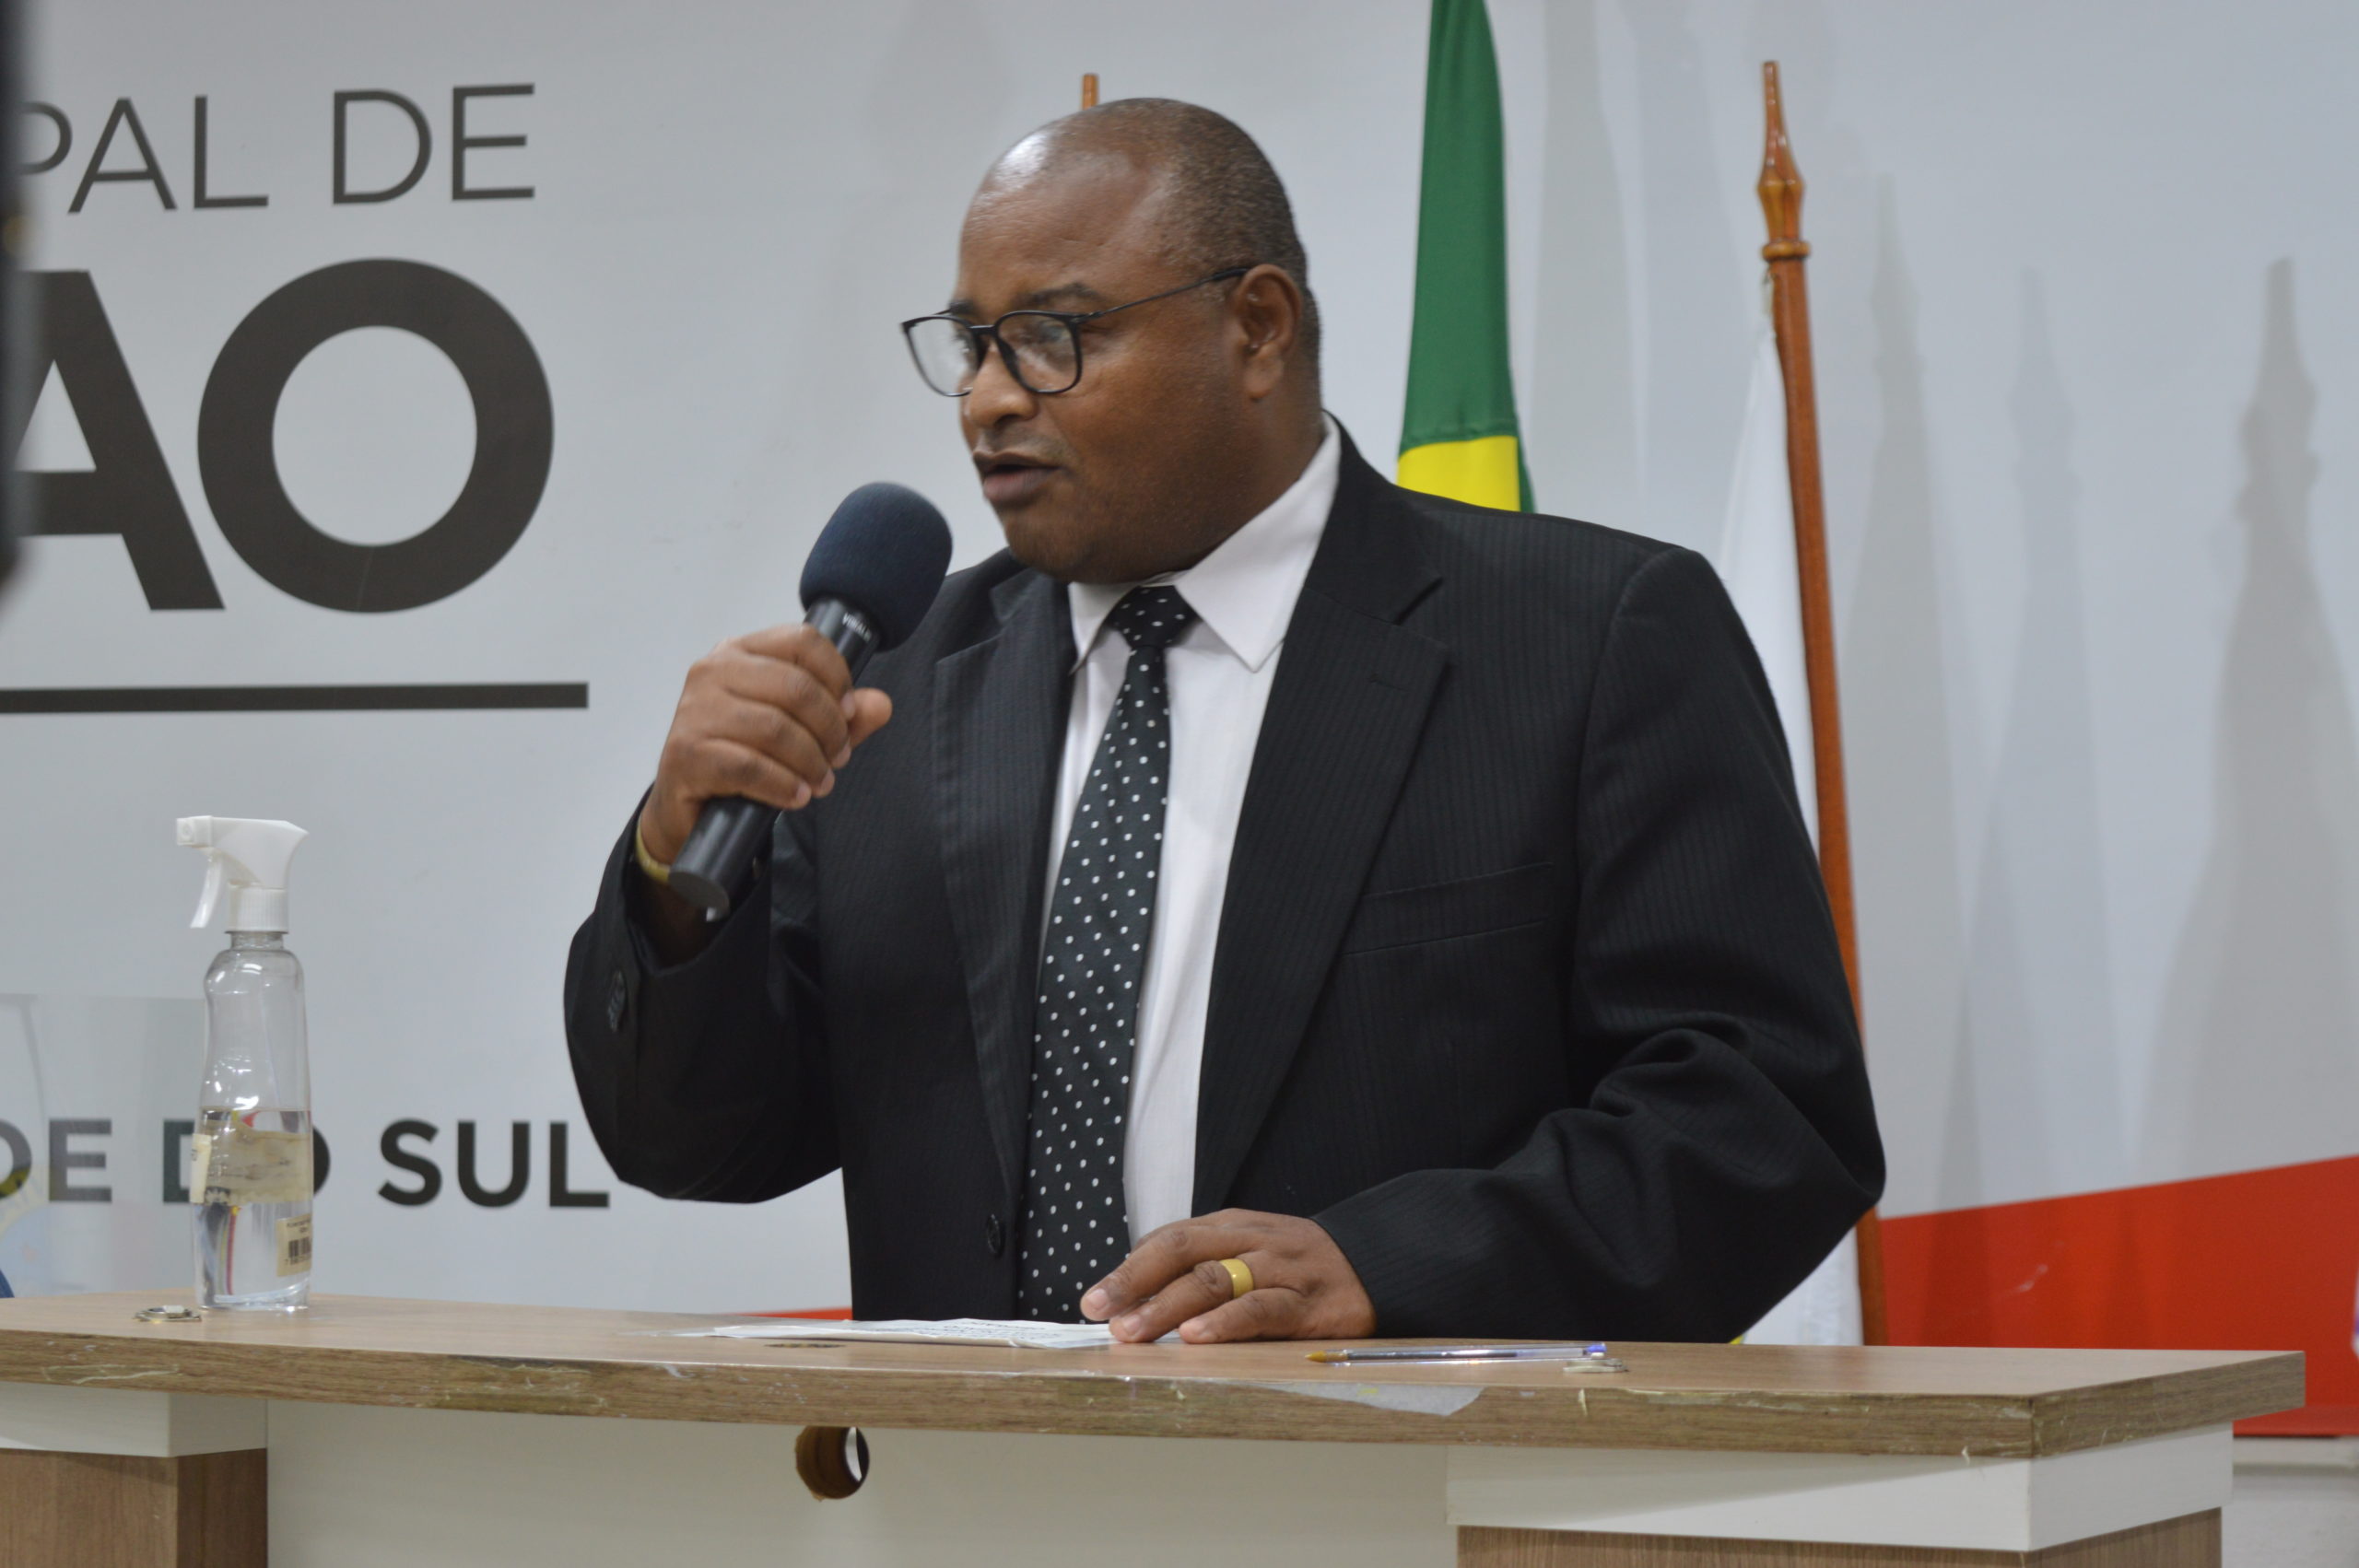 Vereador propõe gratuidade de tarifa no transporte coletivo de Viamão para candidatos inscritos no Enem